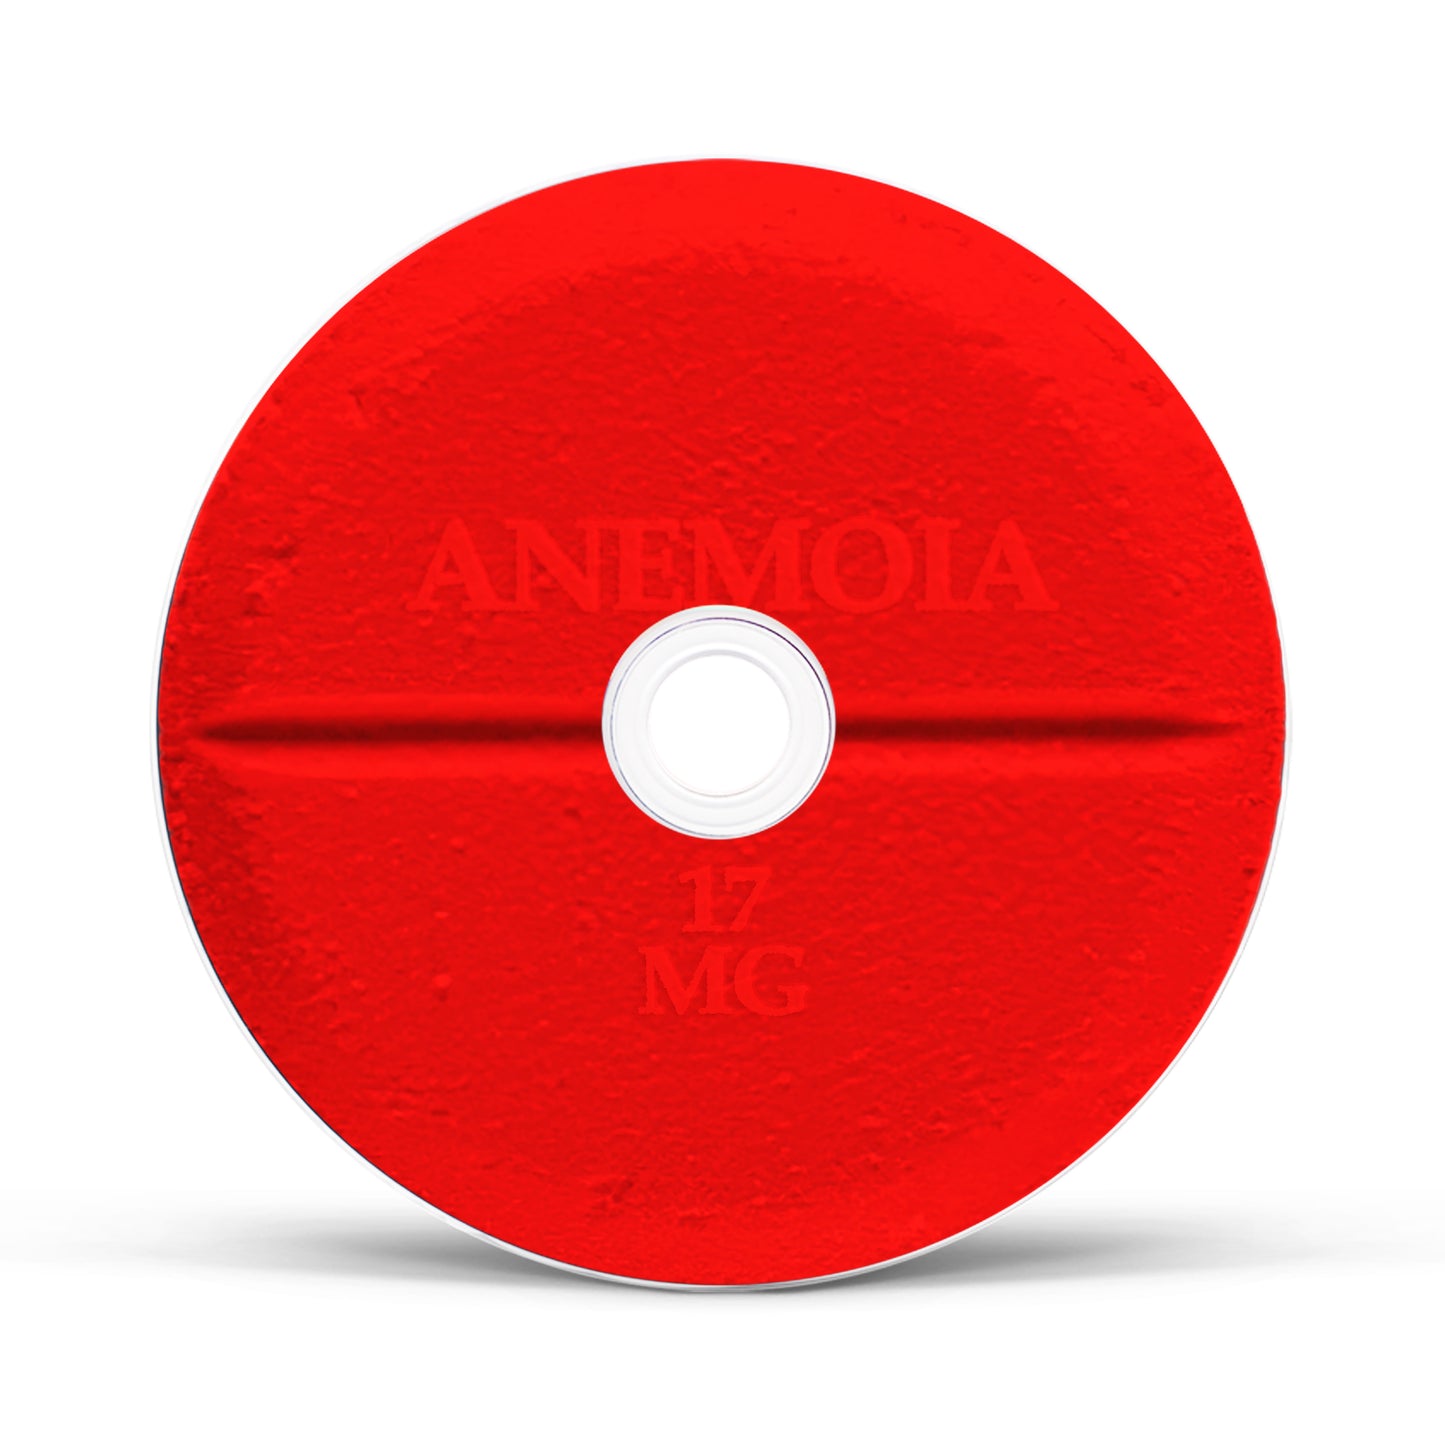 CD - Anemoia - Ouija Macc & Darby O'Trill